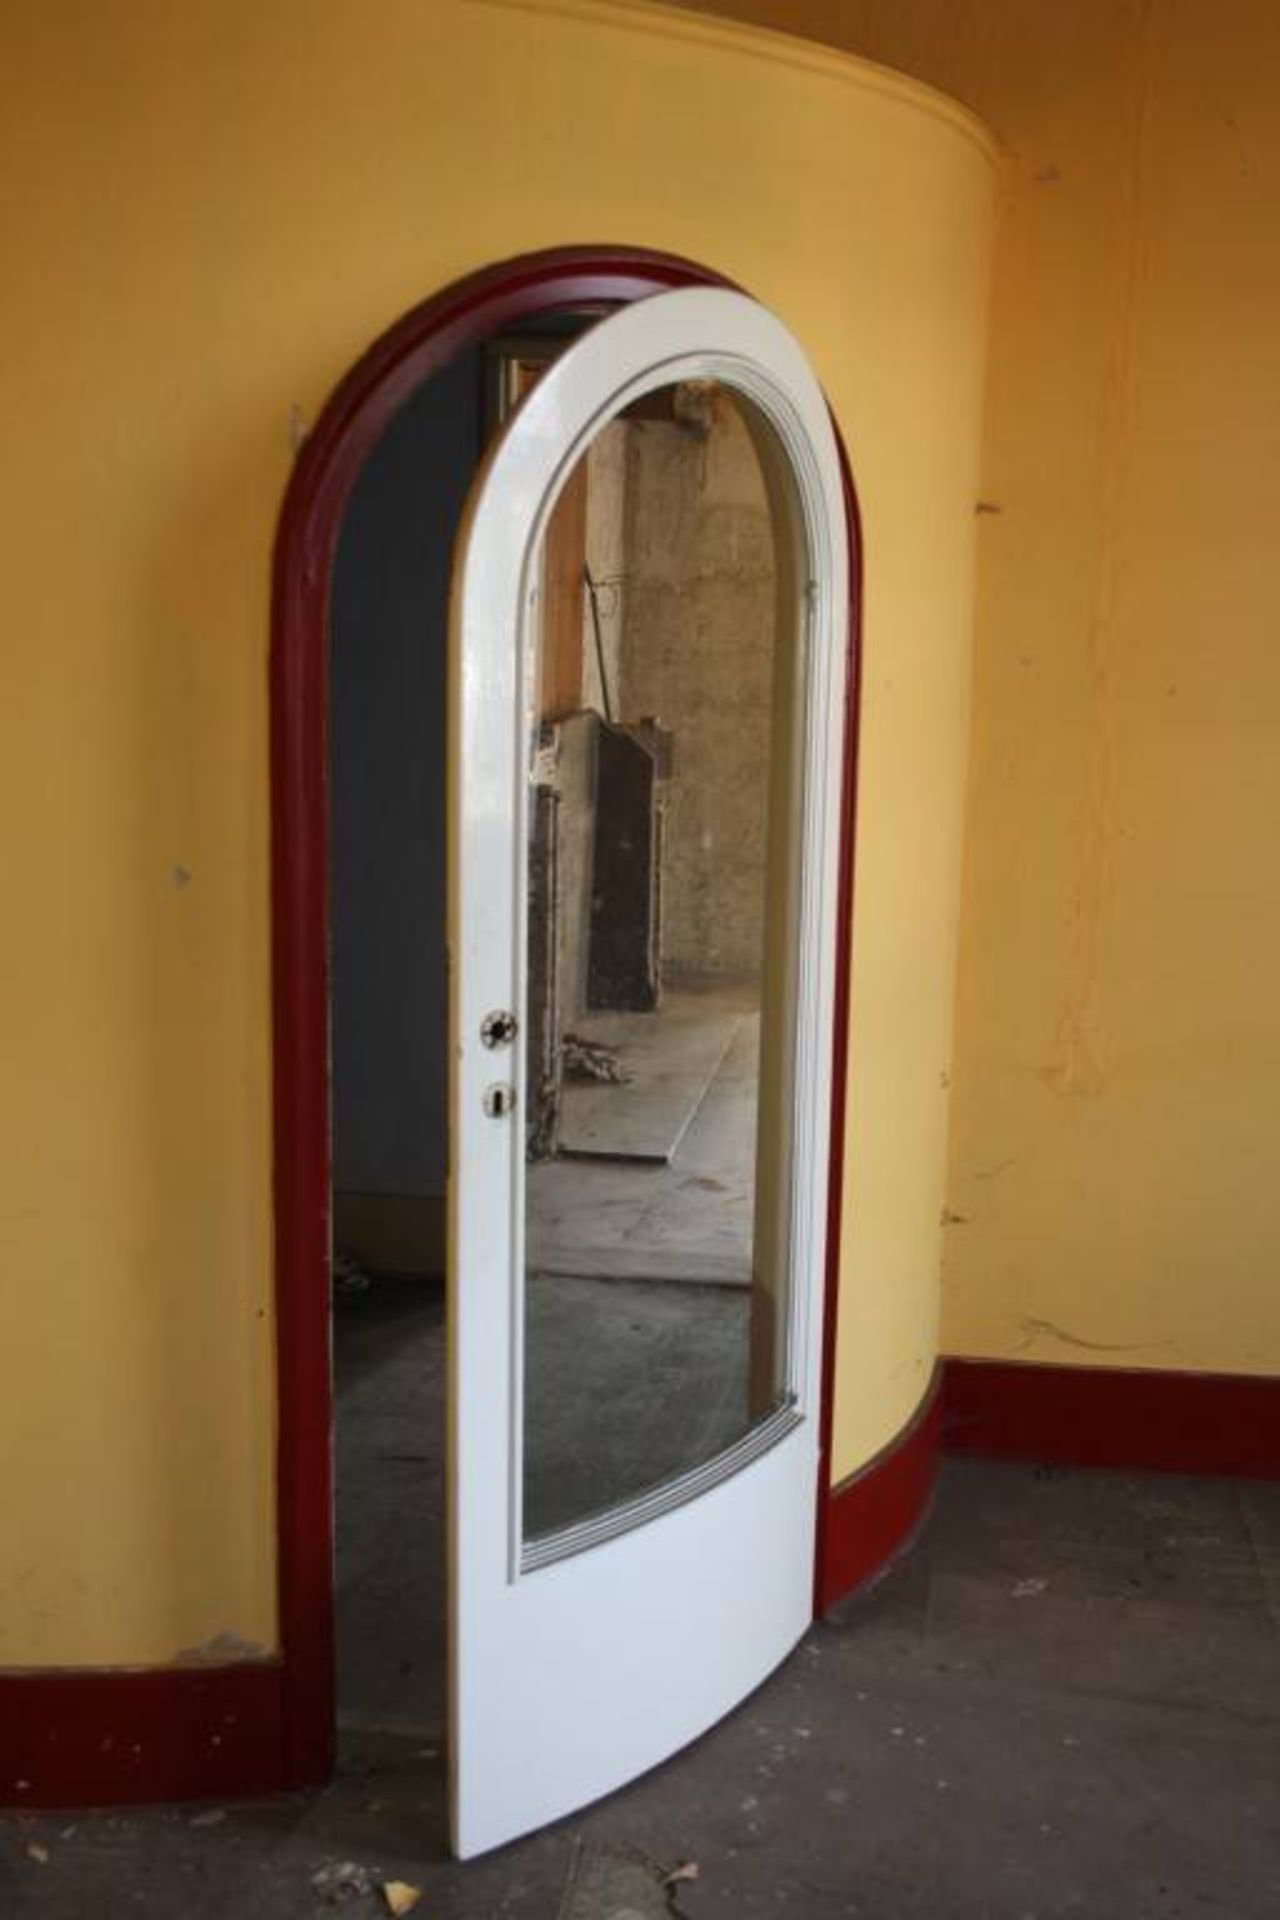 Raumteiler mit gewölbter Glastür
für Eckeinbau mit Türaussparung, diese mit gewölbter Verglasung, - Image 8 of 9